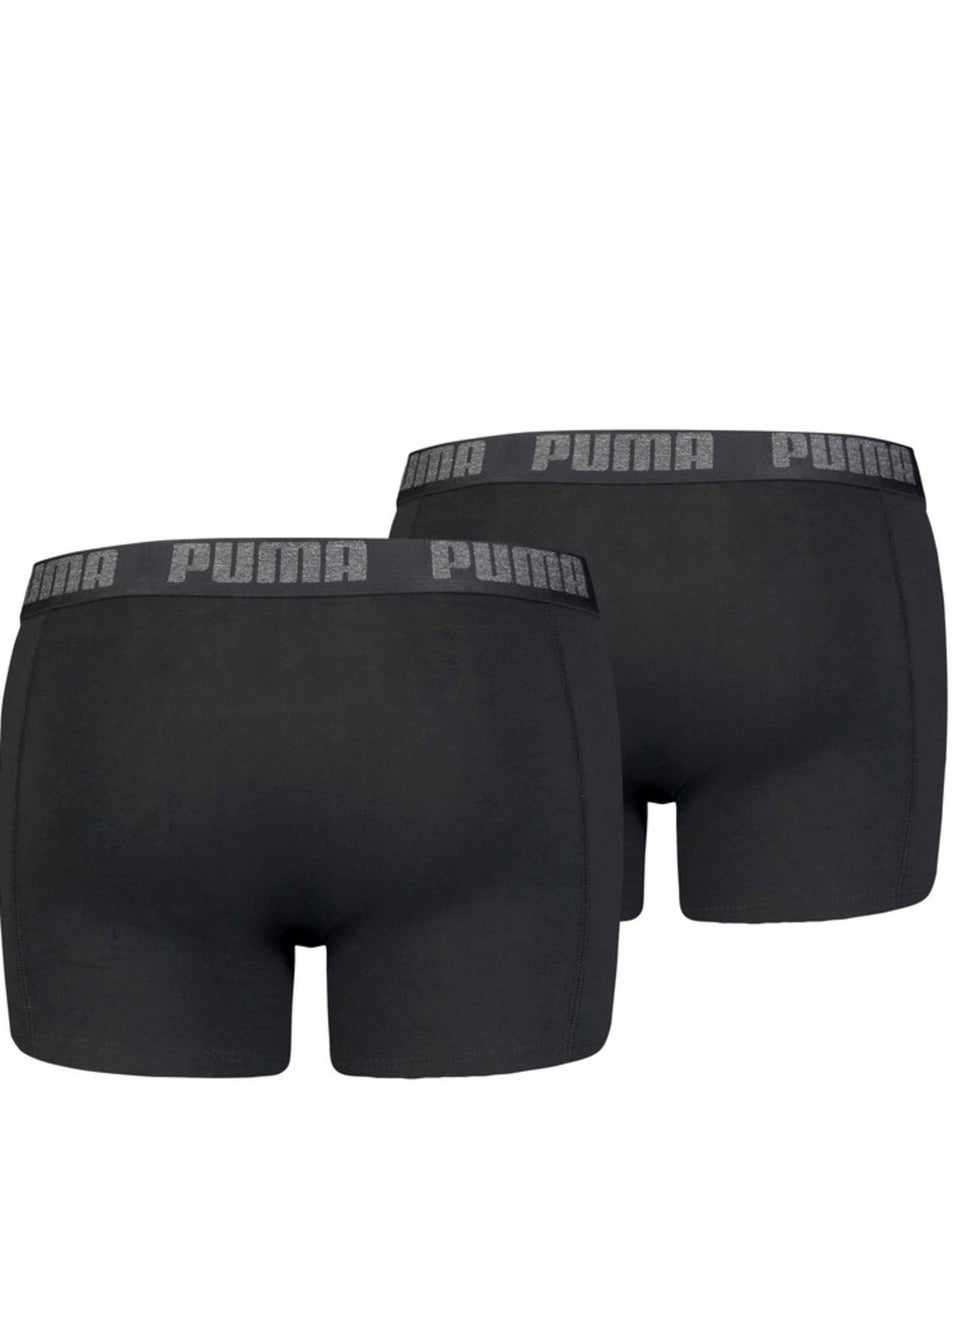 Puma Black Basic Boxer Shorts (Pack of 2)